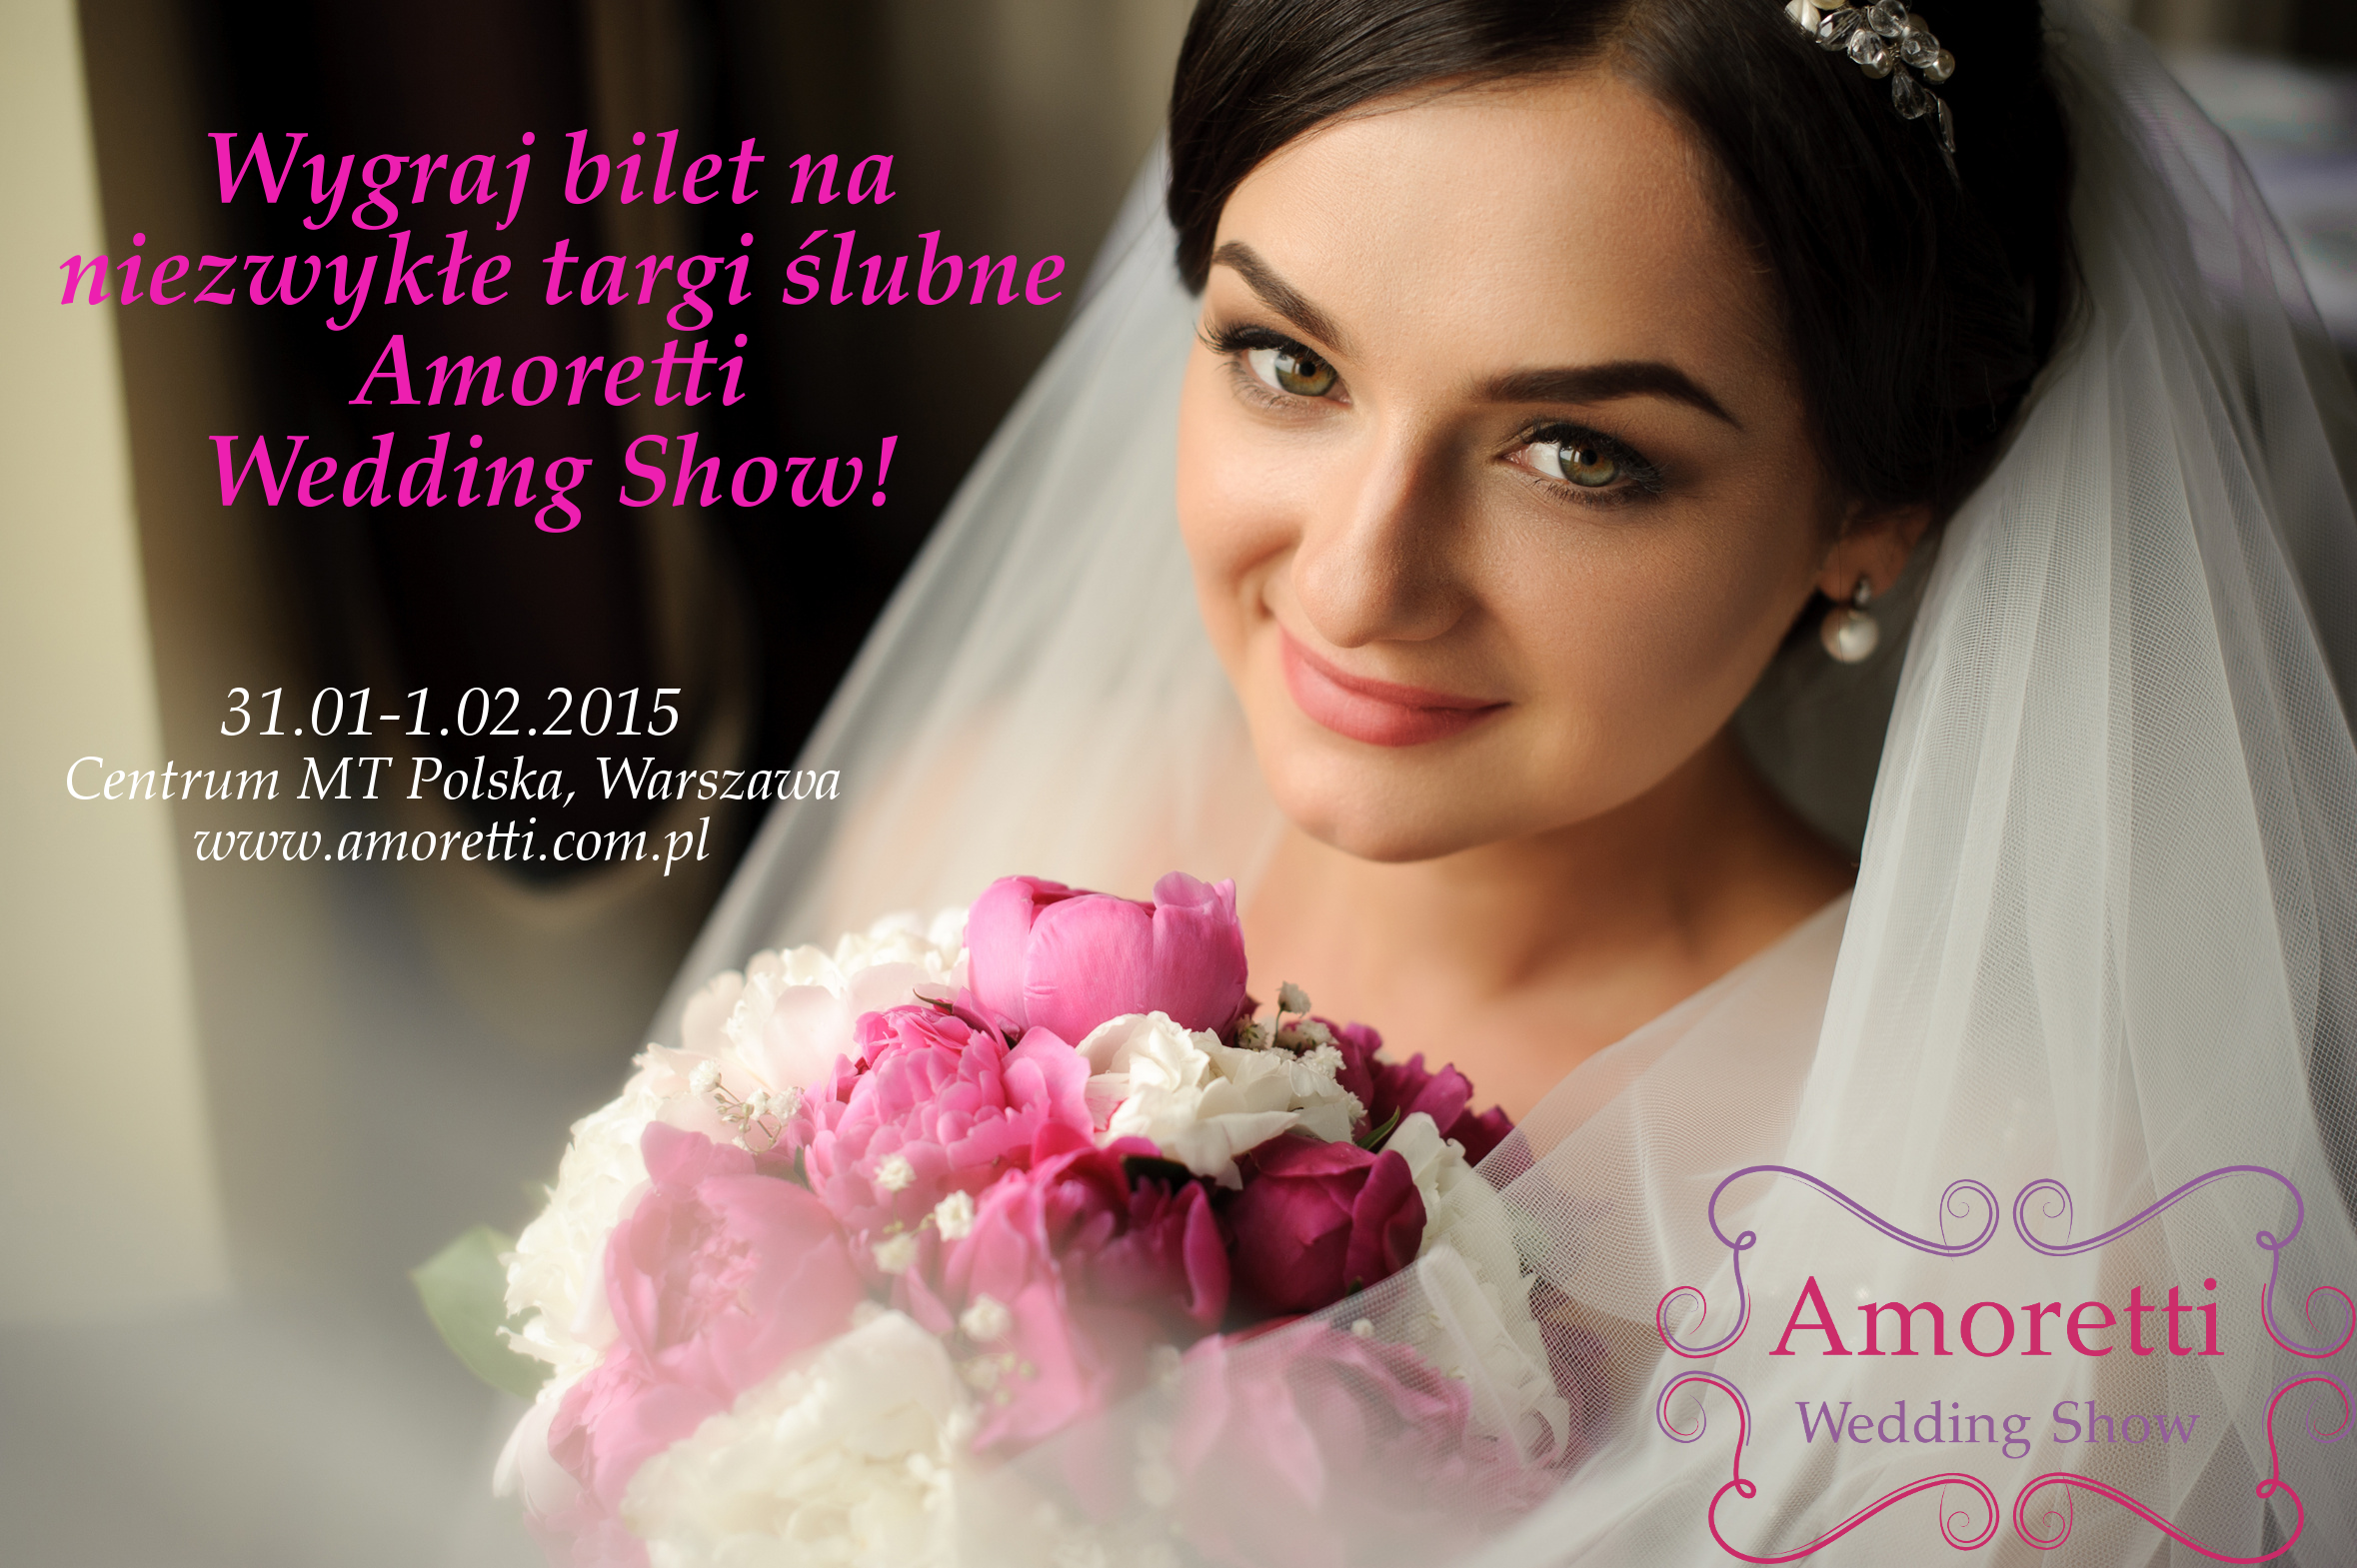 AMORETTI WEDDING SHOW